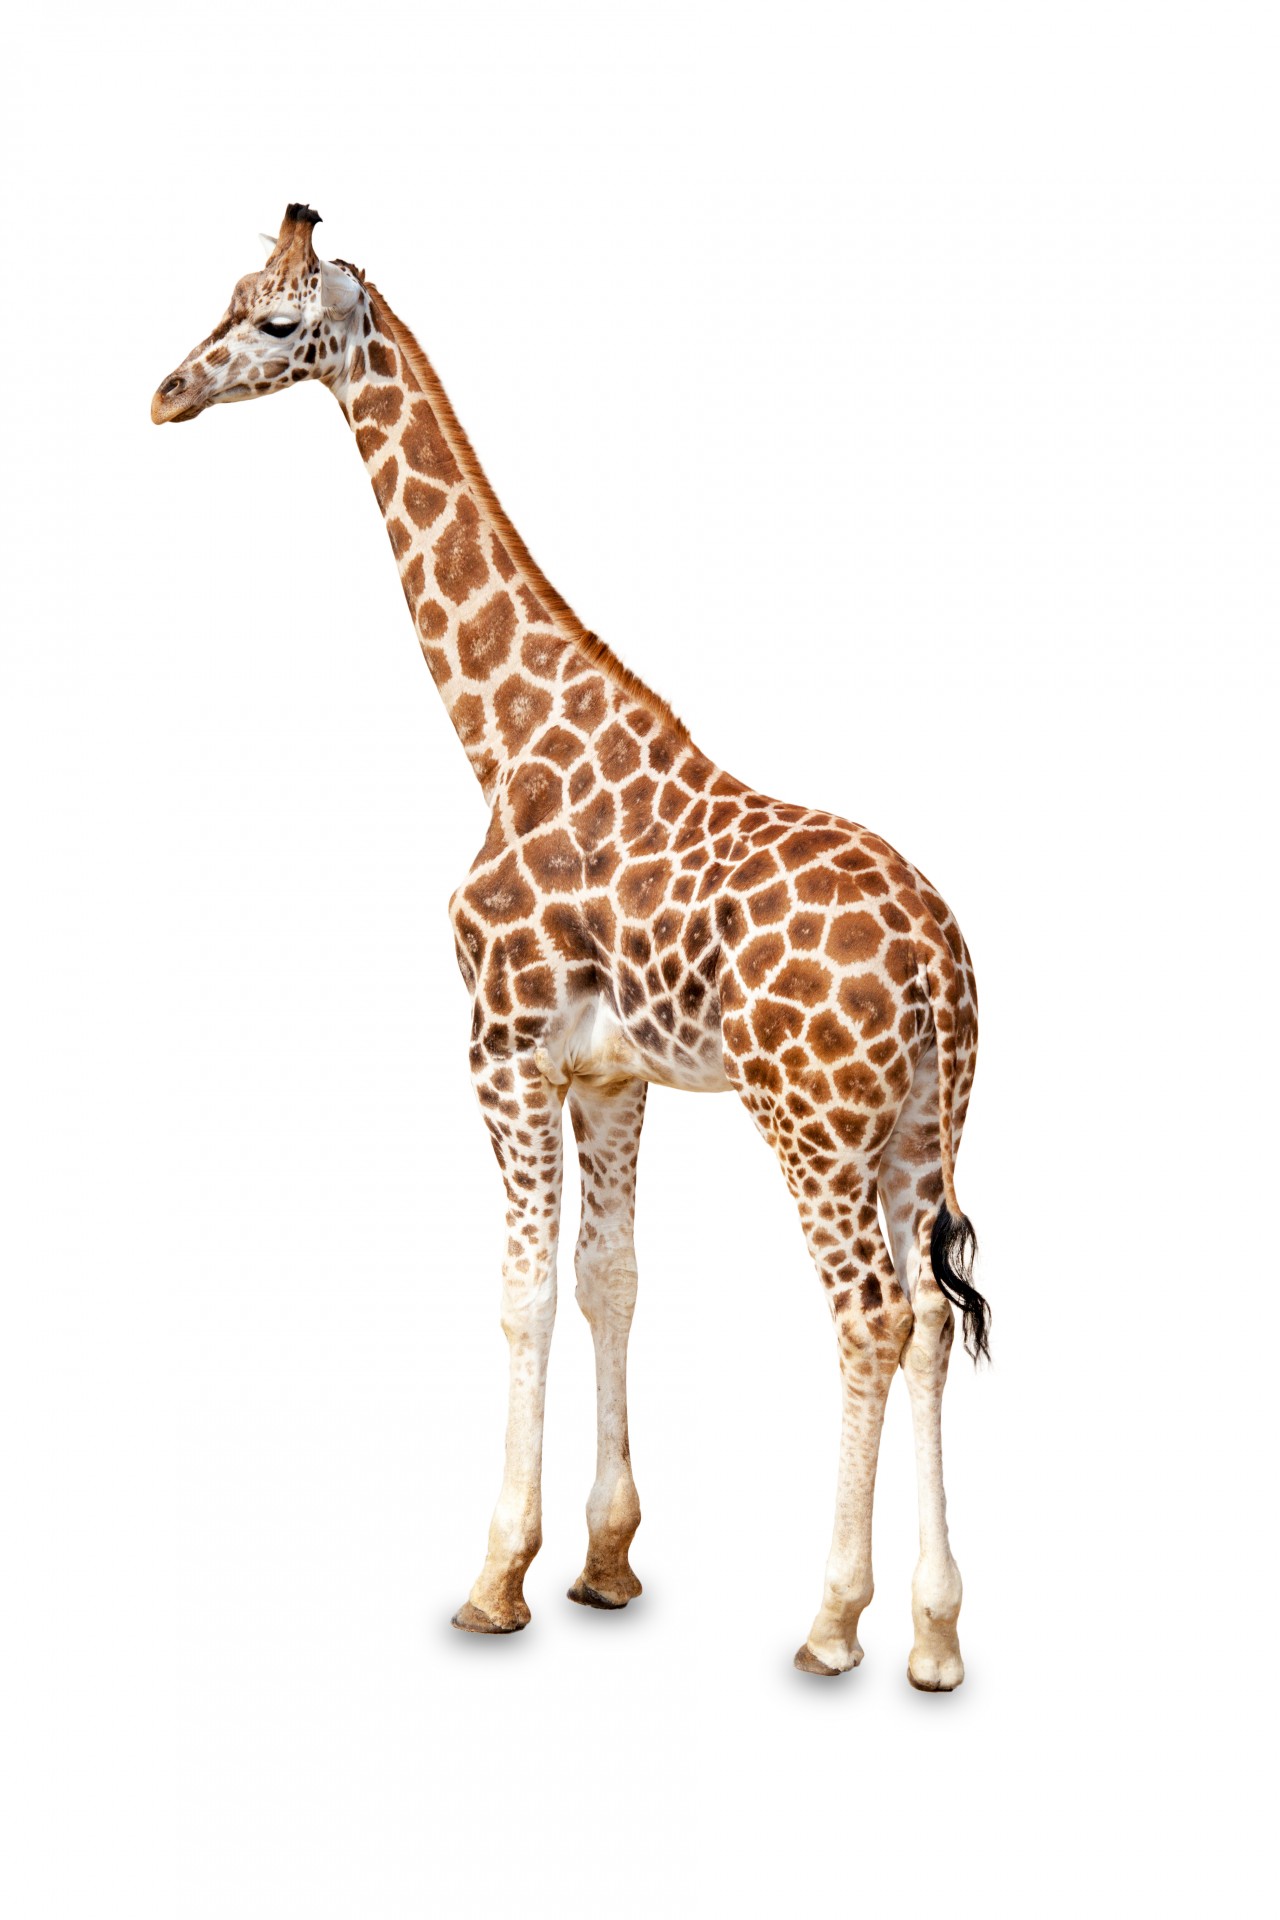 Giraffe Standing Isolated